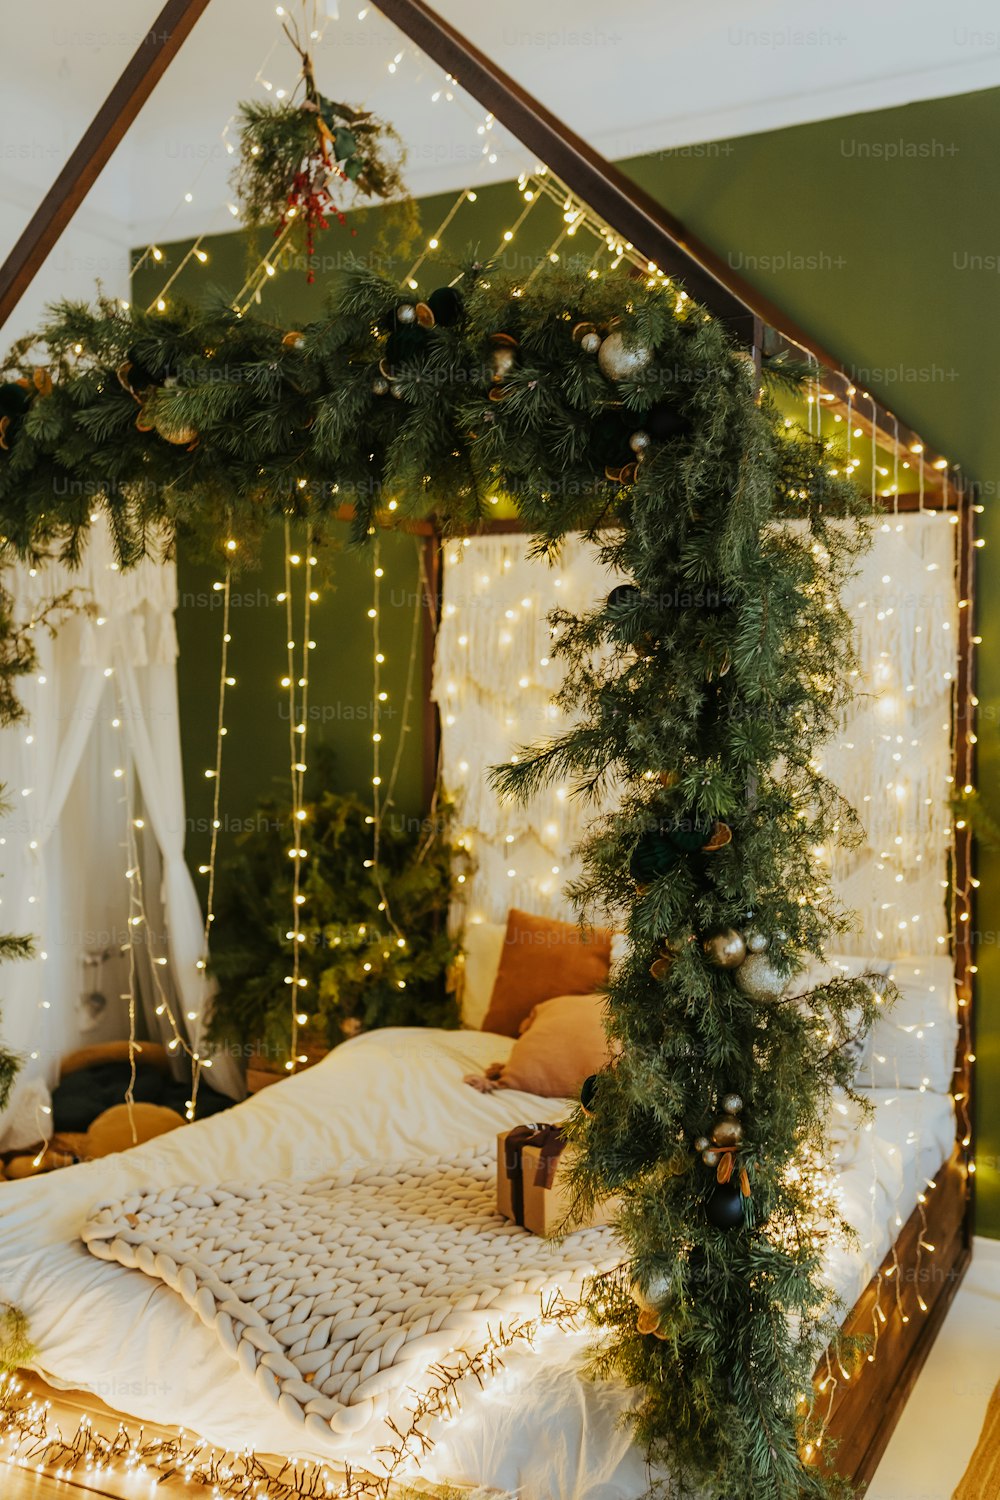 ein Bett mit einem Baldachin, das mit Weihnachtsbeleuchtung bedeckt ist